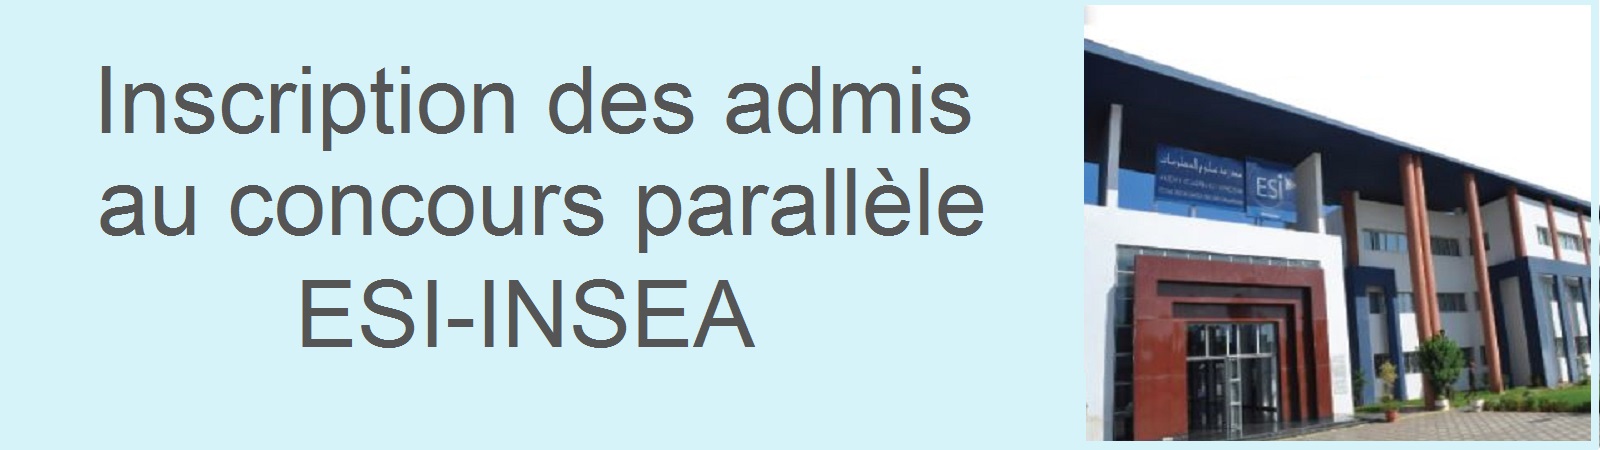 Inscription des admis au concours parallèle ESI-INSEA (Cycle Ingénieur)